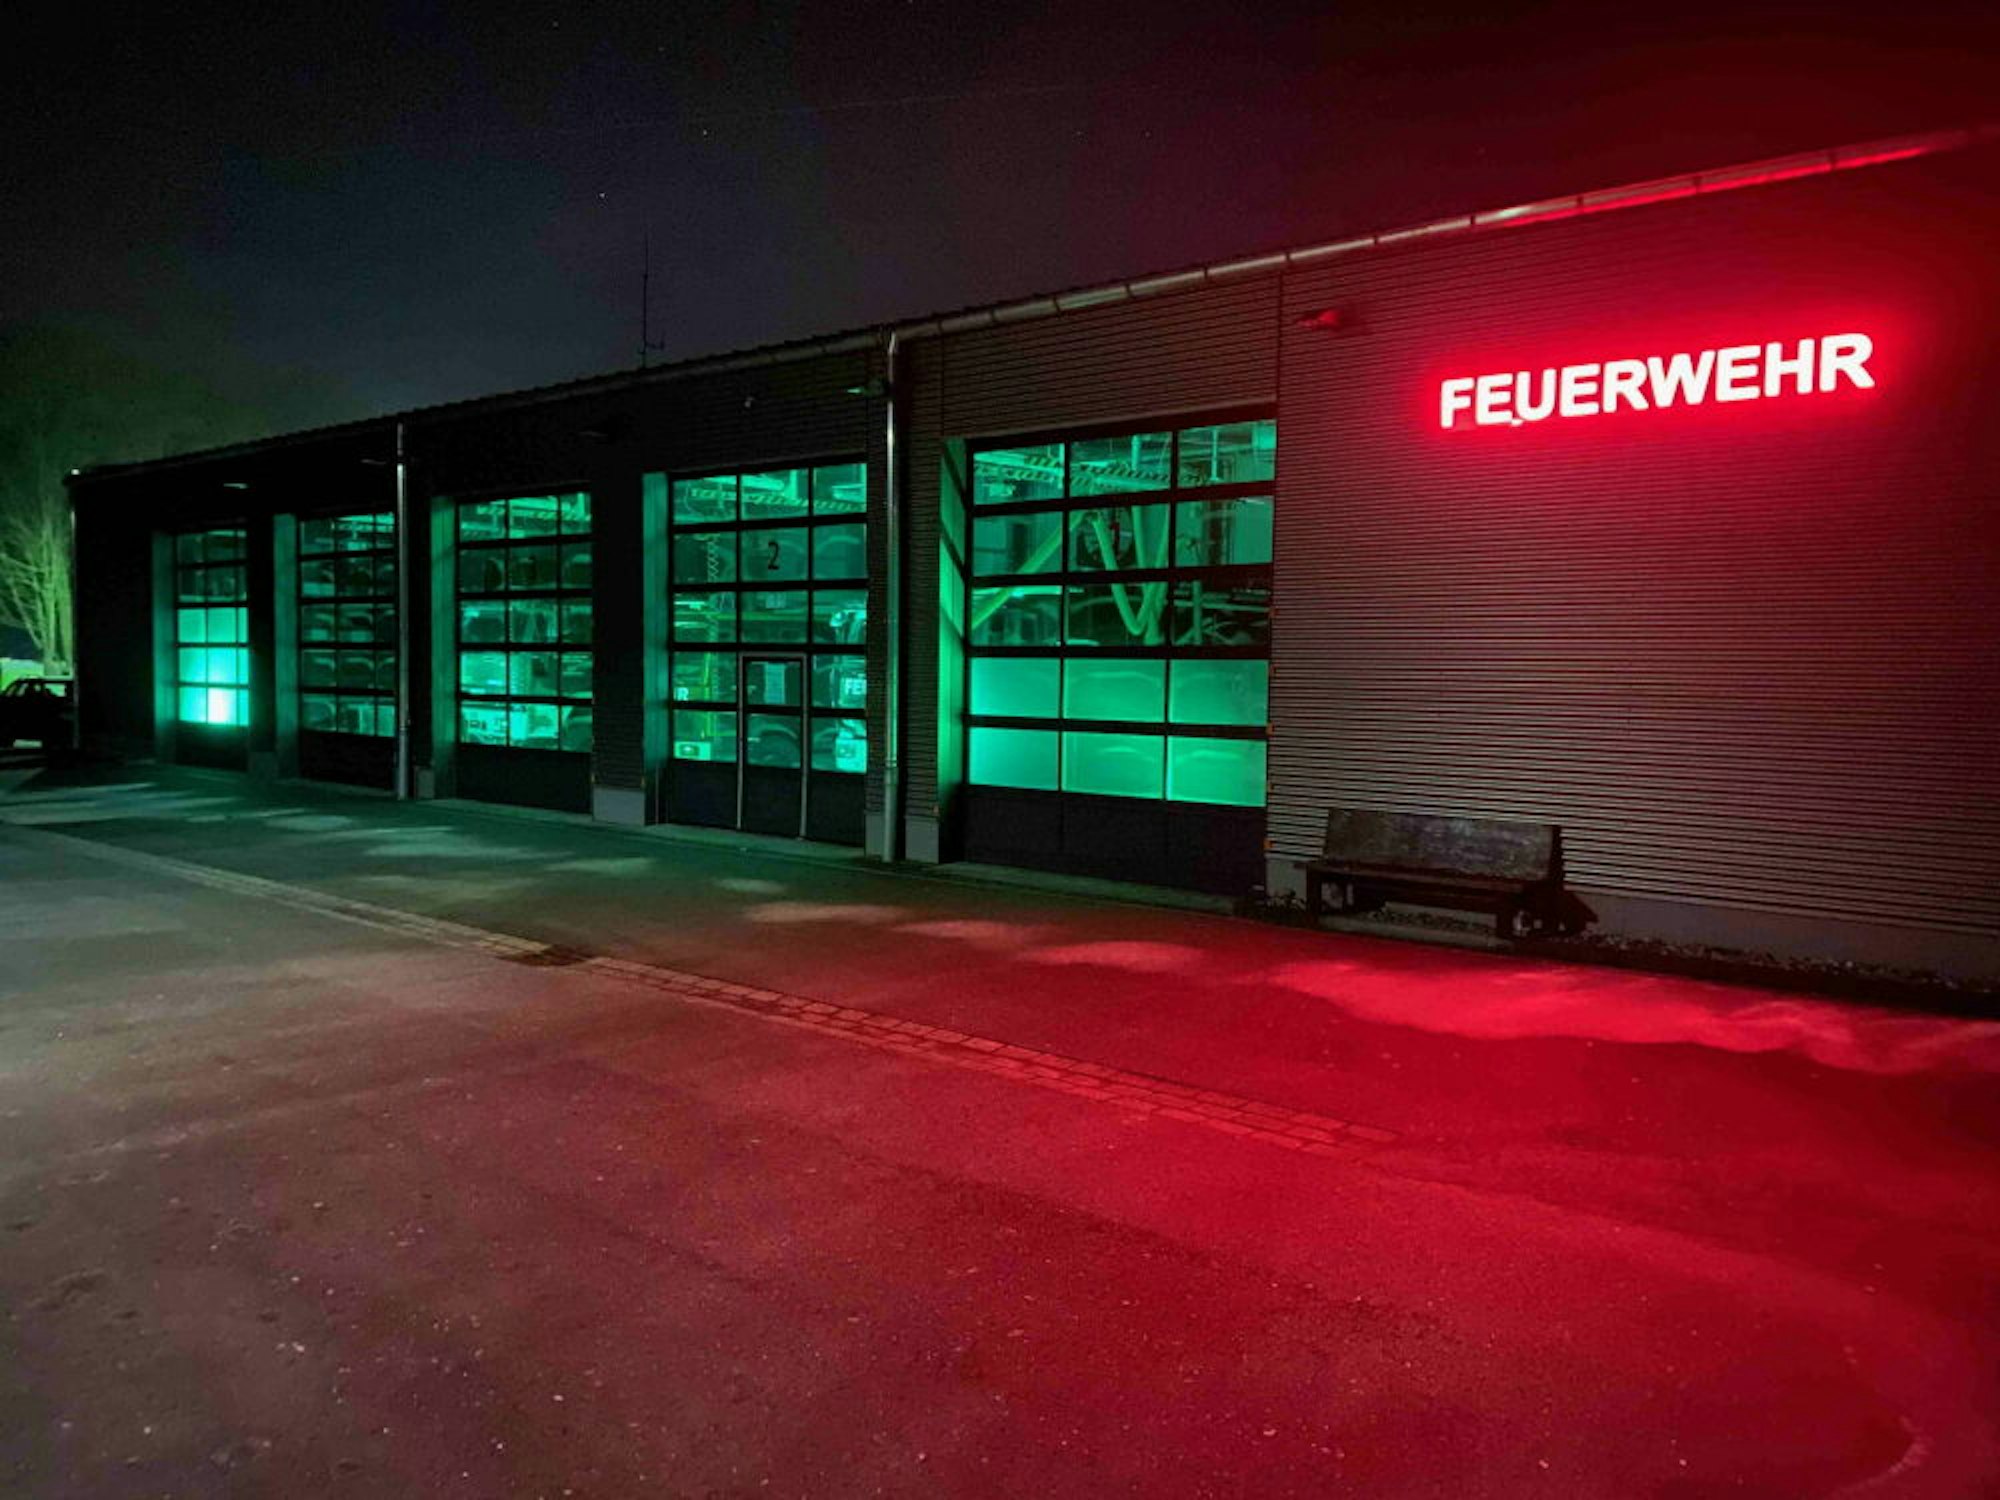 Die Lohmarer Feuerwehr beteiligte sich an der Aktion am Tag der Kinderhospizarbeit, indem sie an allen fünf Standorten grüne Beleuchtung einschaltete.